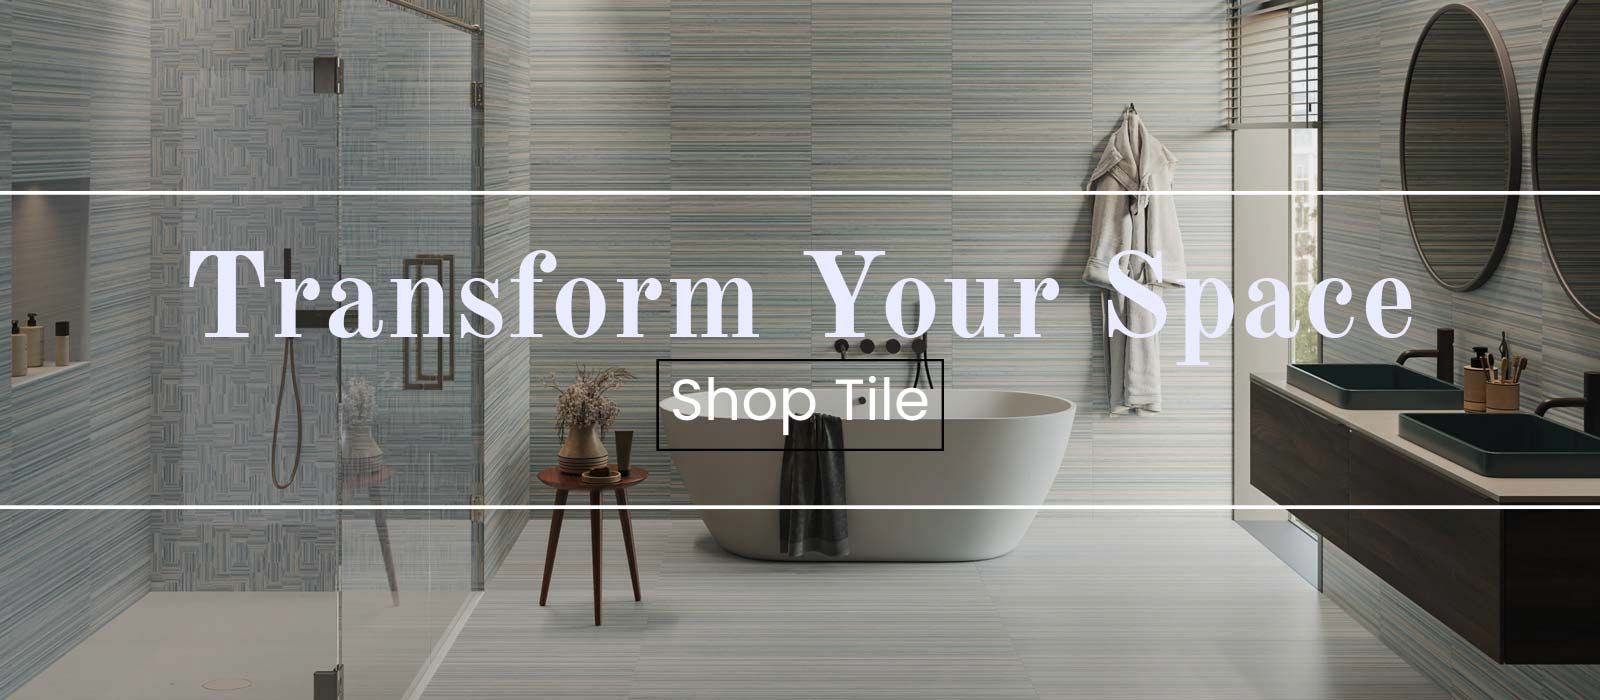 Transform Your Space! Shop Tile!